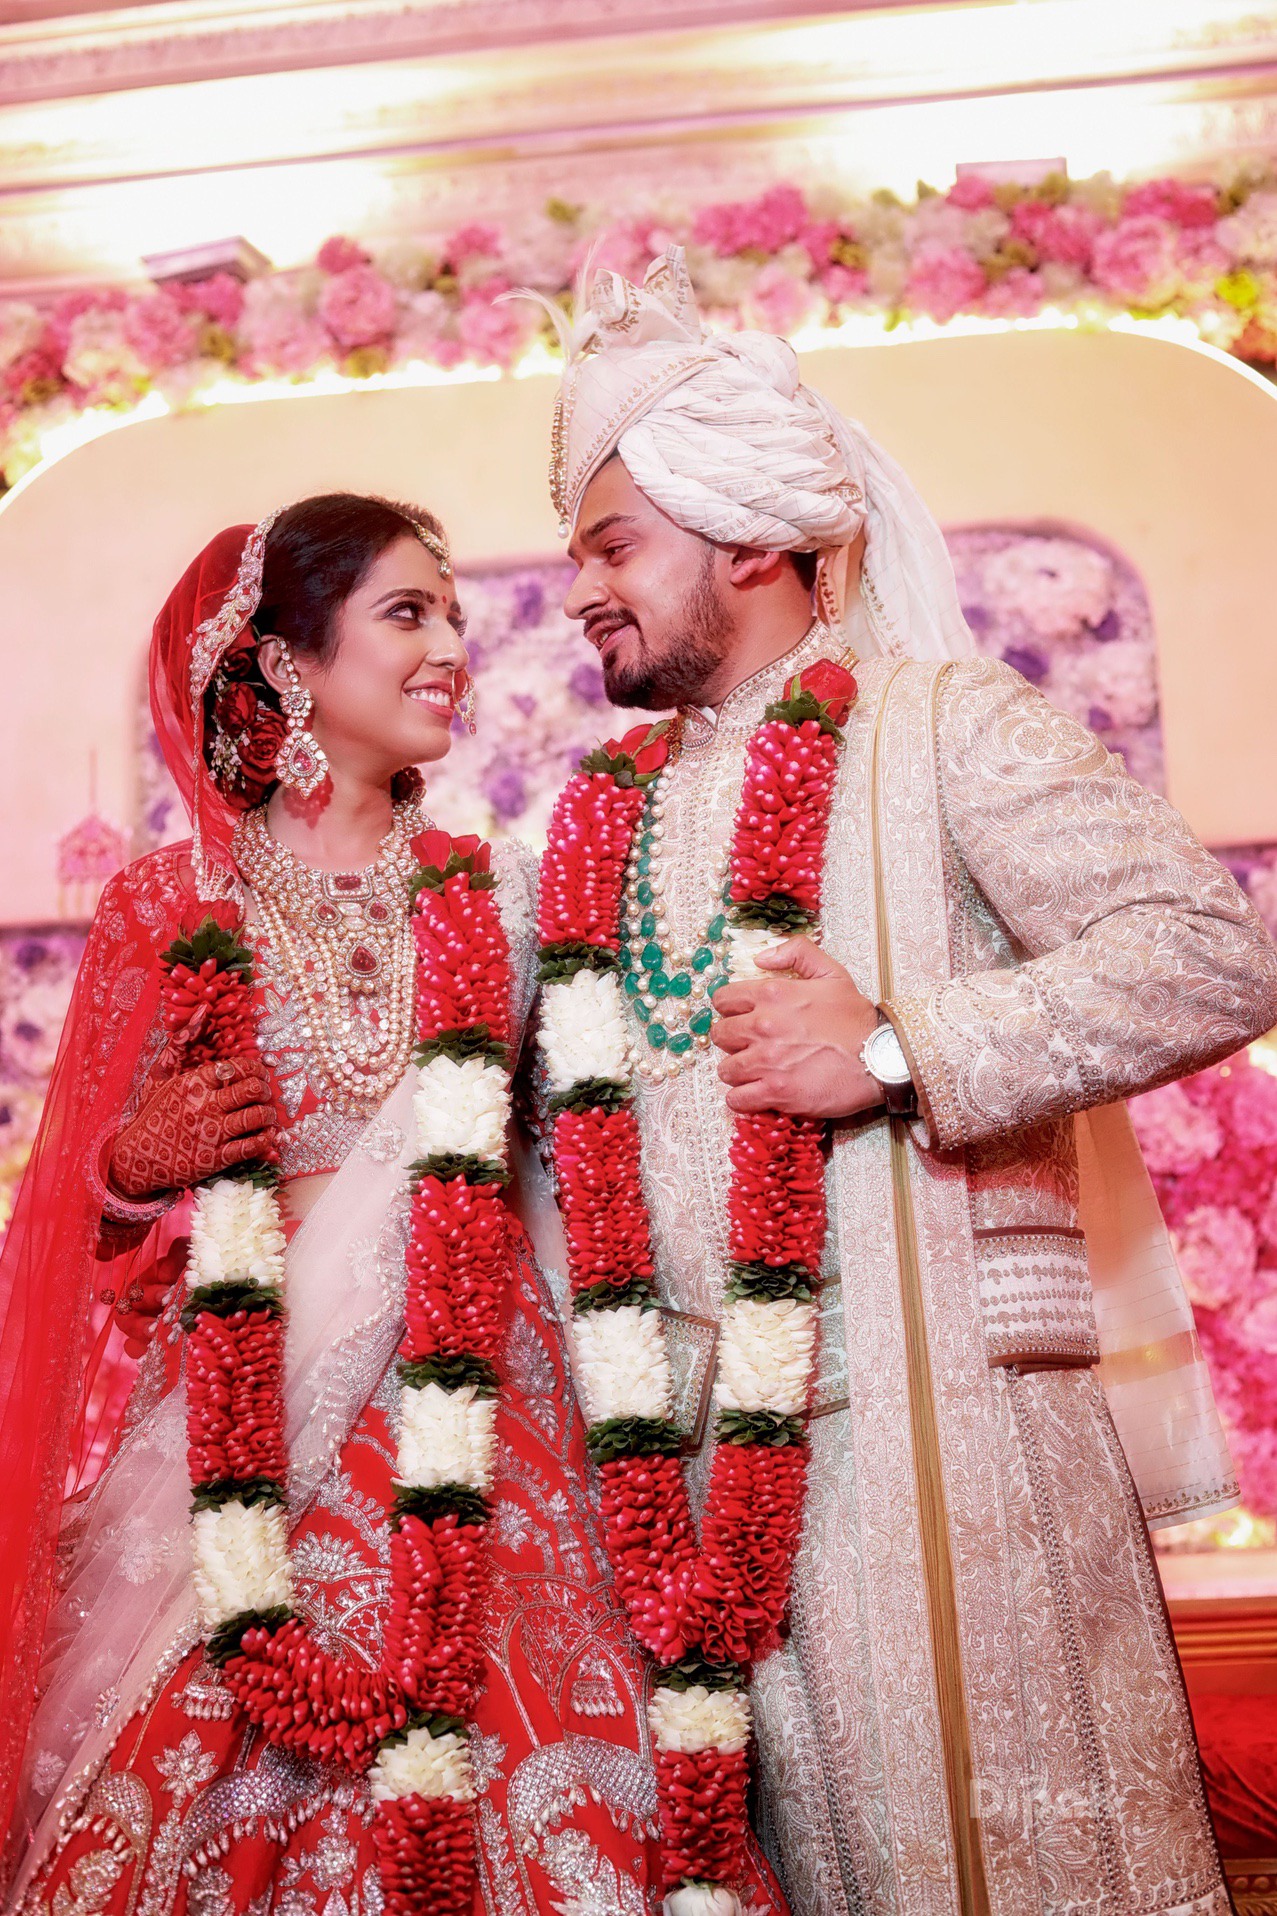 Rajput bride groom | Indian wedding couple photography, Indian wedding  photography poses, Indian wedding photography couples